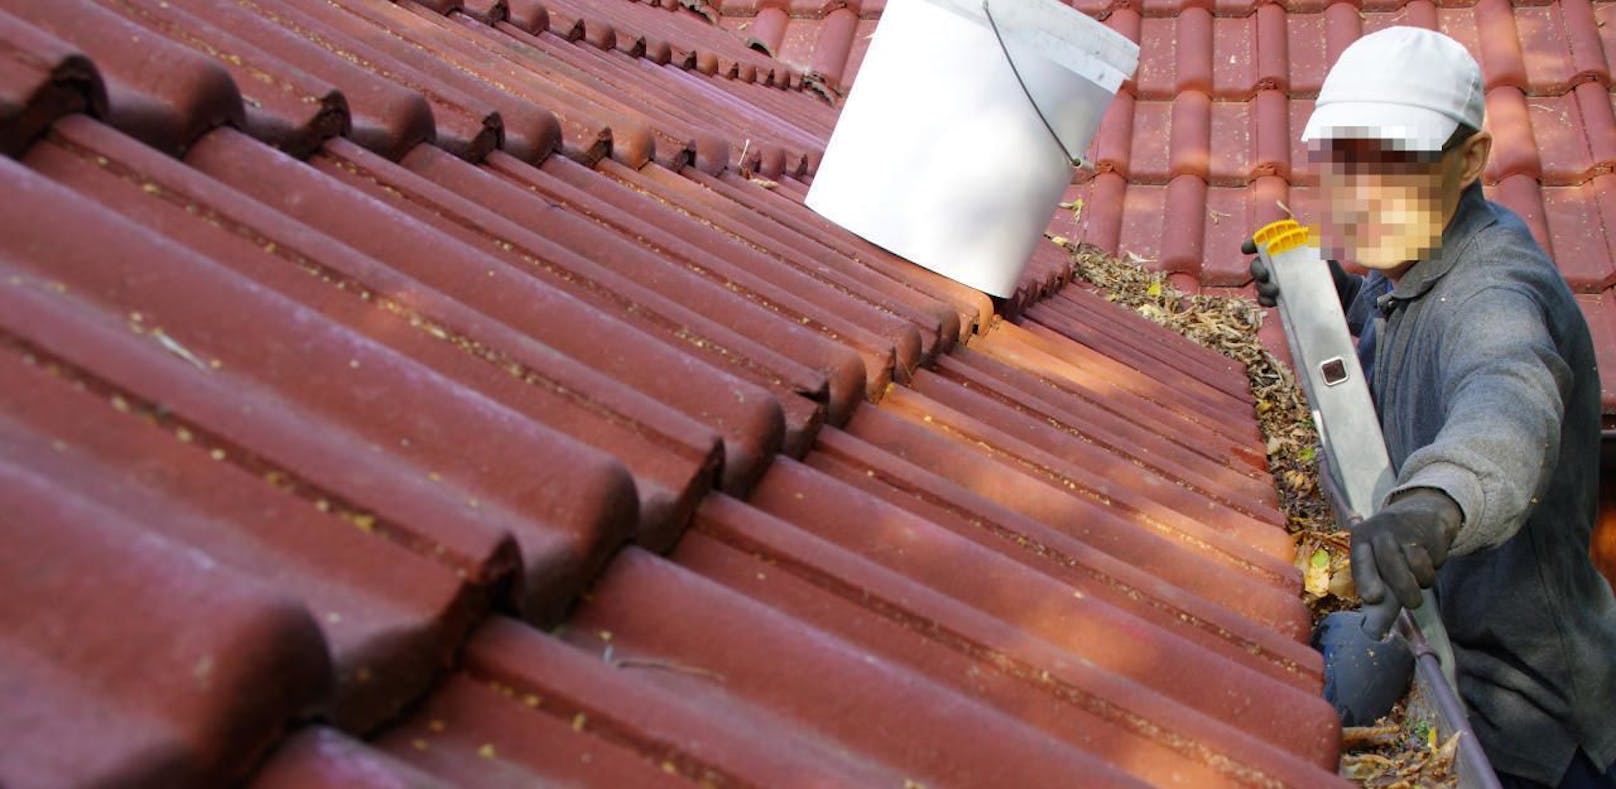 Ein Dachspengler stürzte vom Dach eines Hauses während der Arbeit. (Symbolbild)